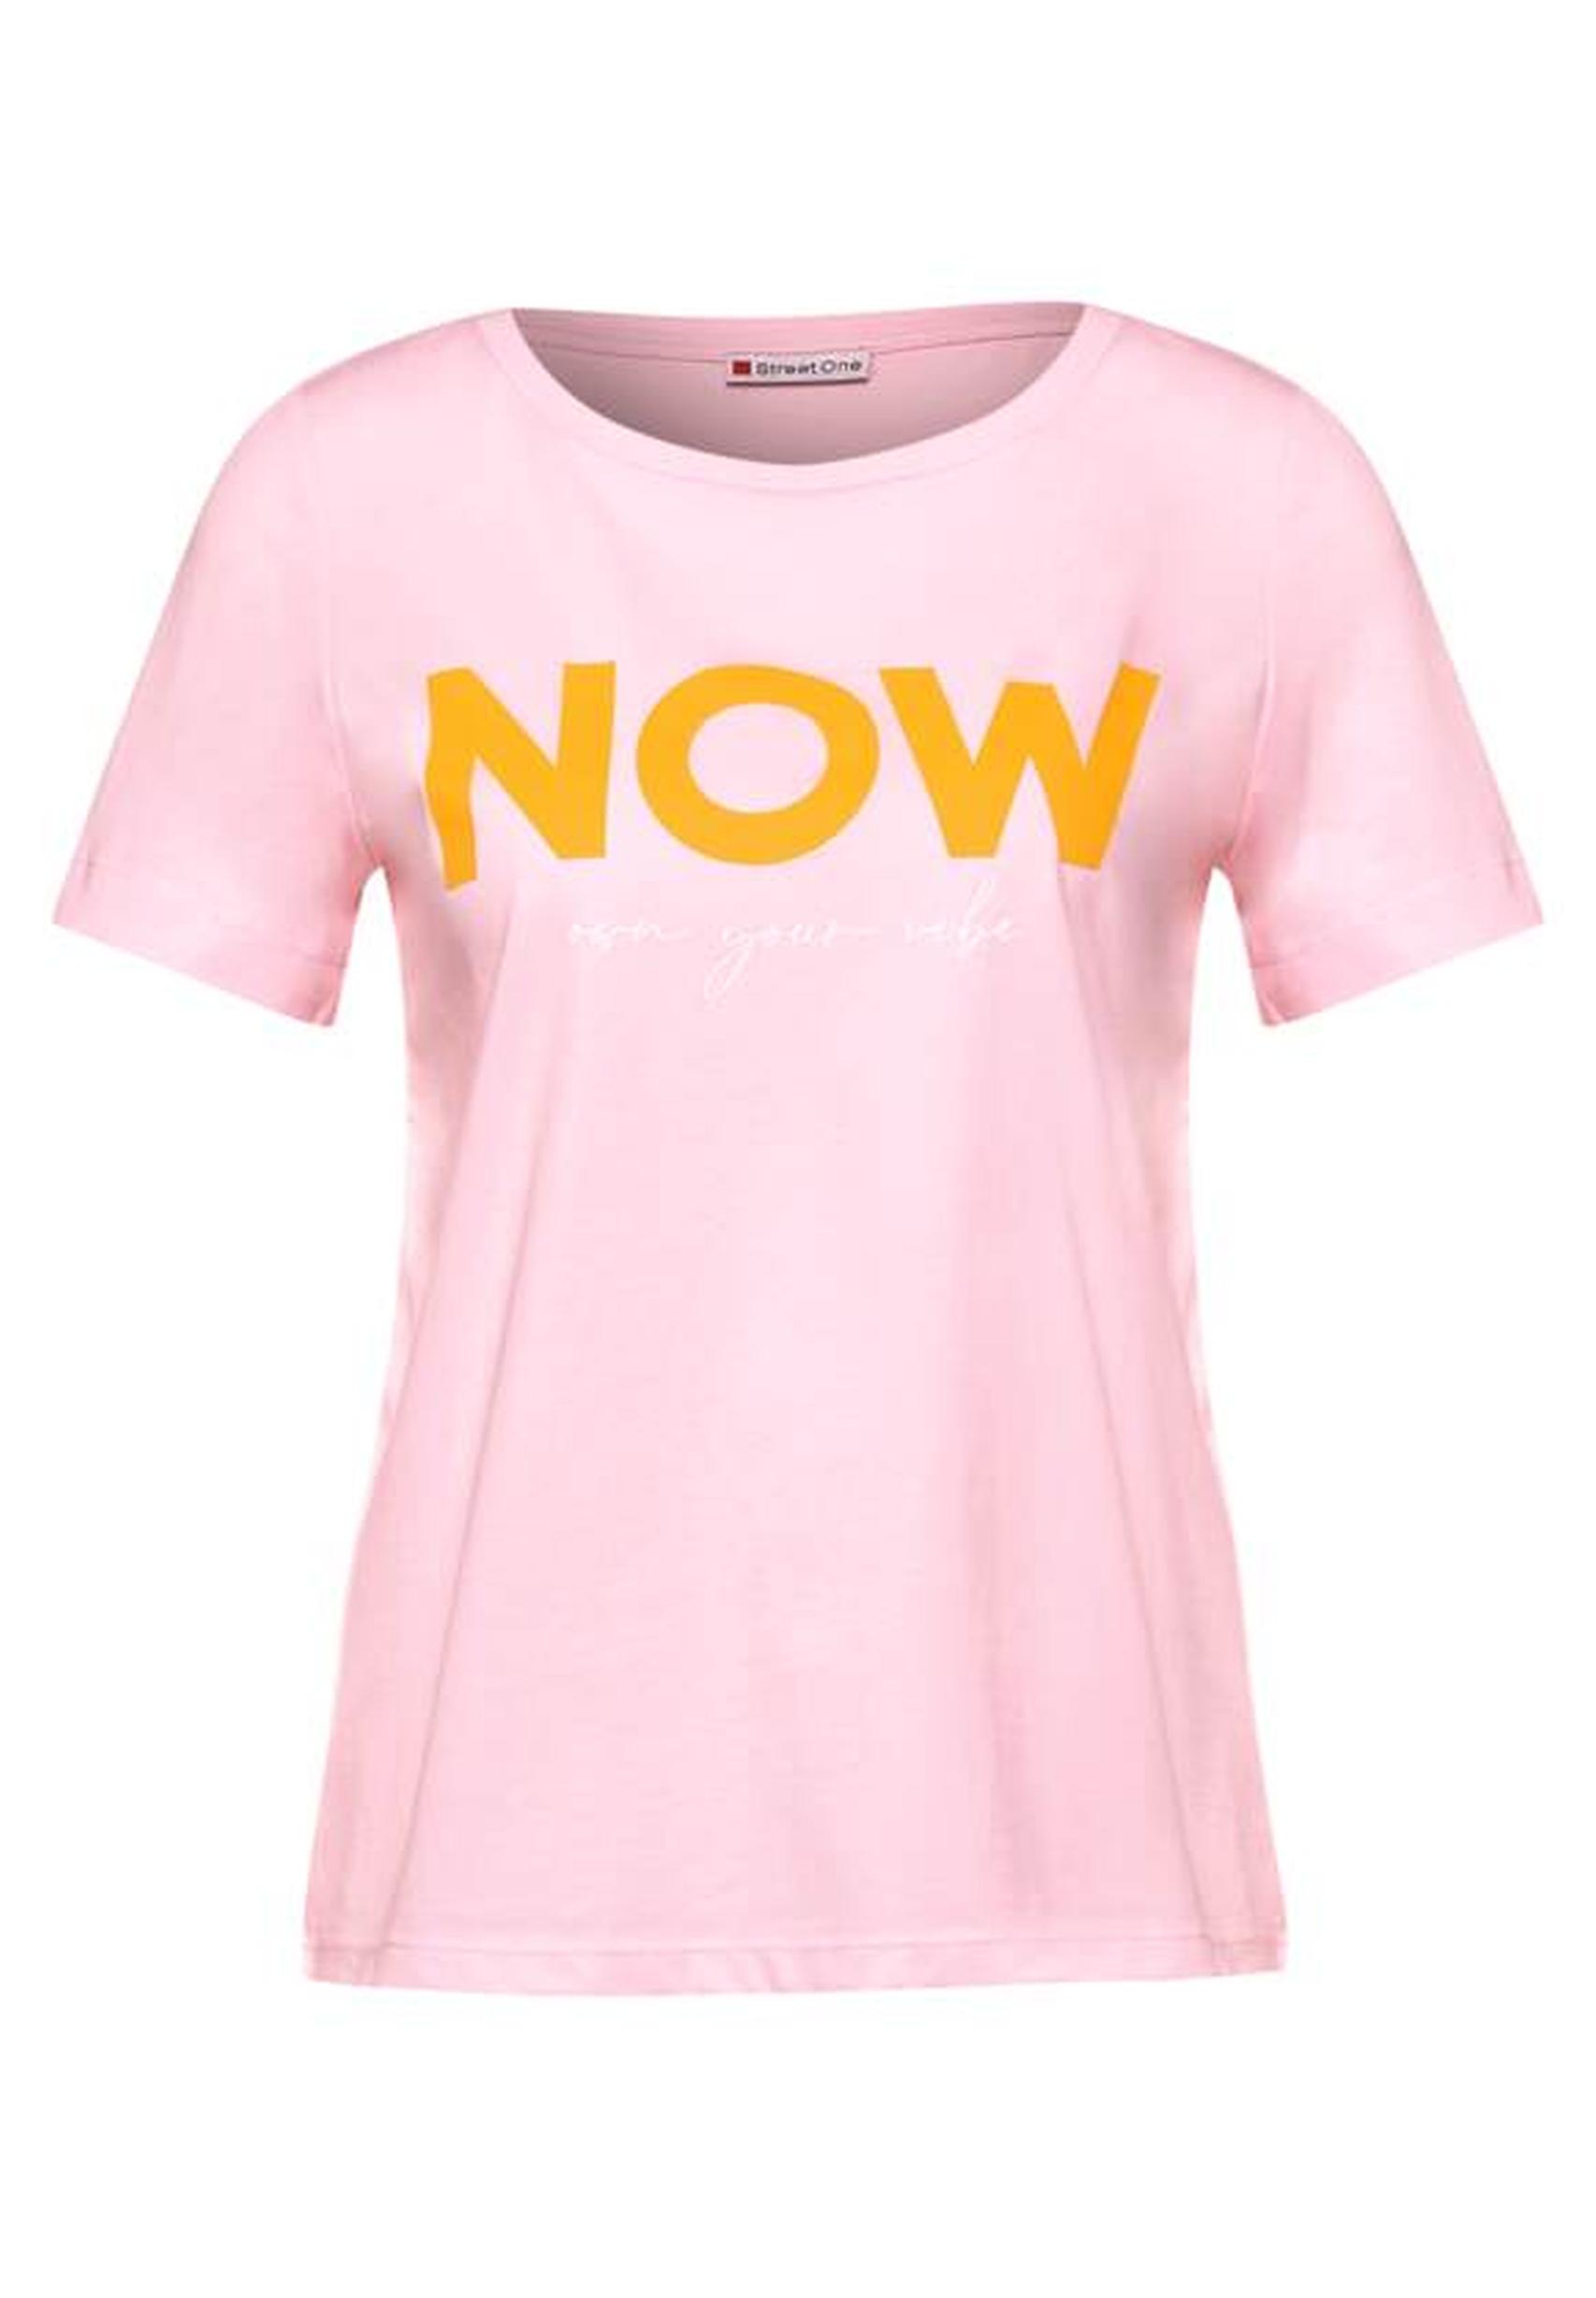 Trendiges T-Shirt aus der Kollektion One - icy rose 317605 Street in von